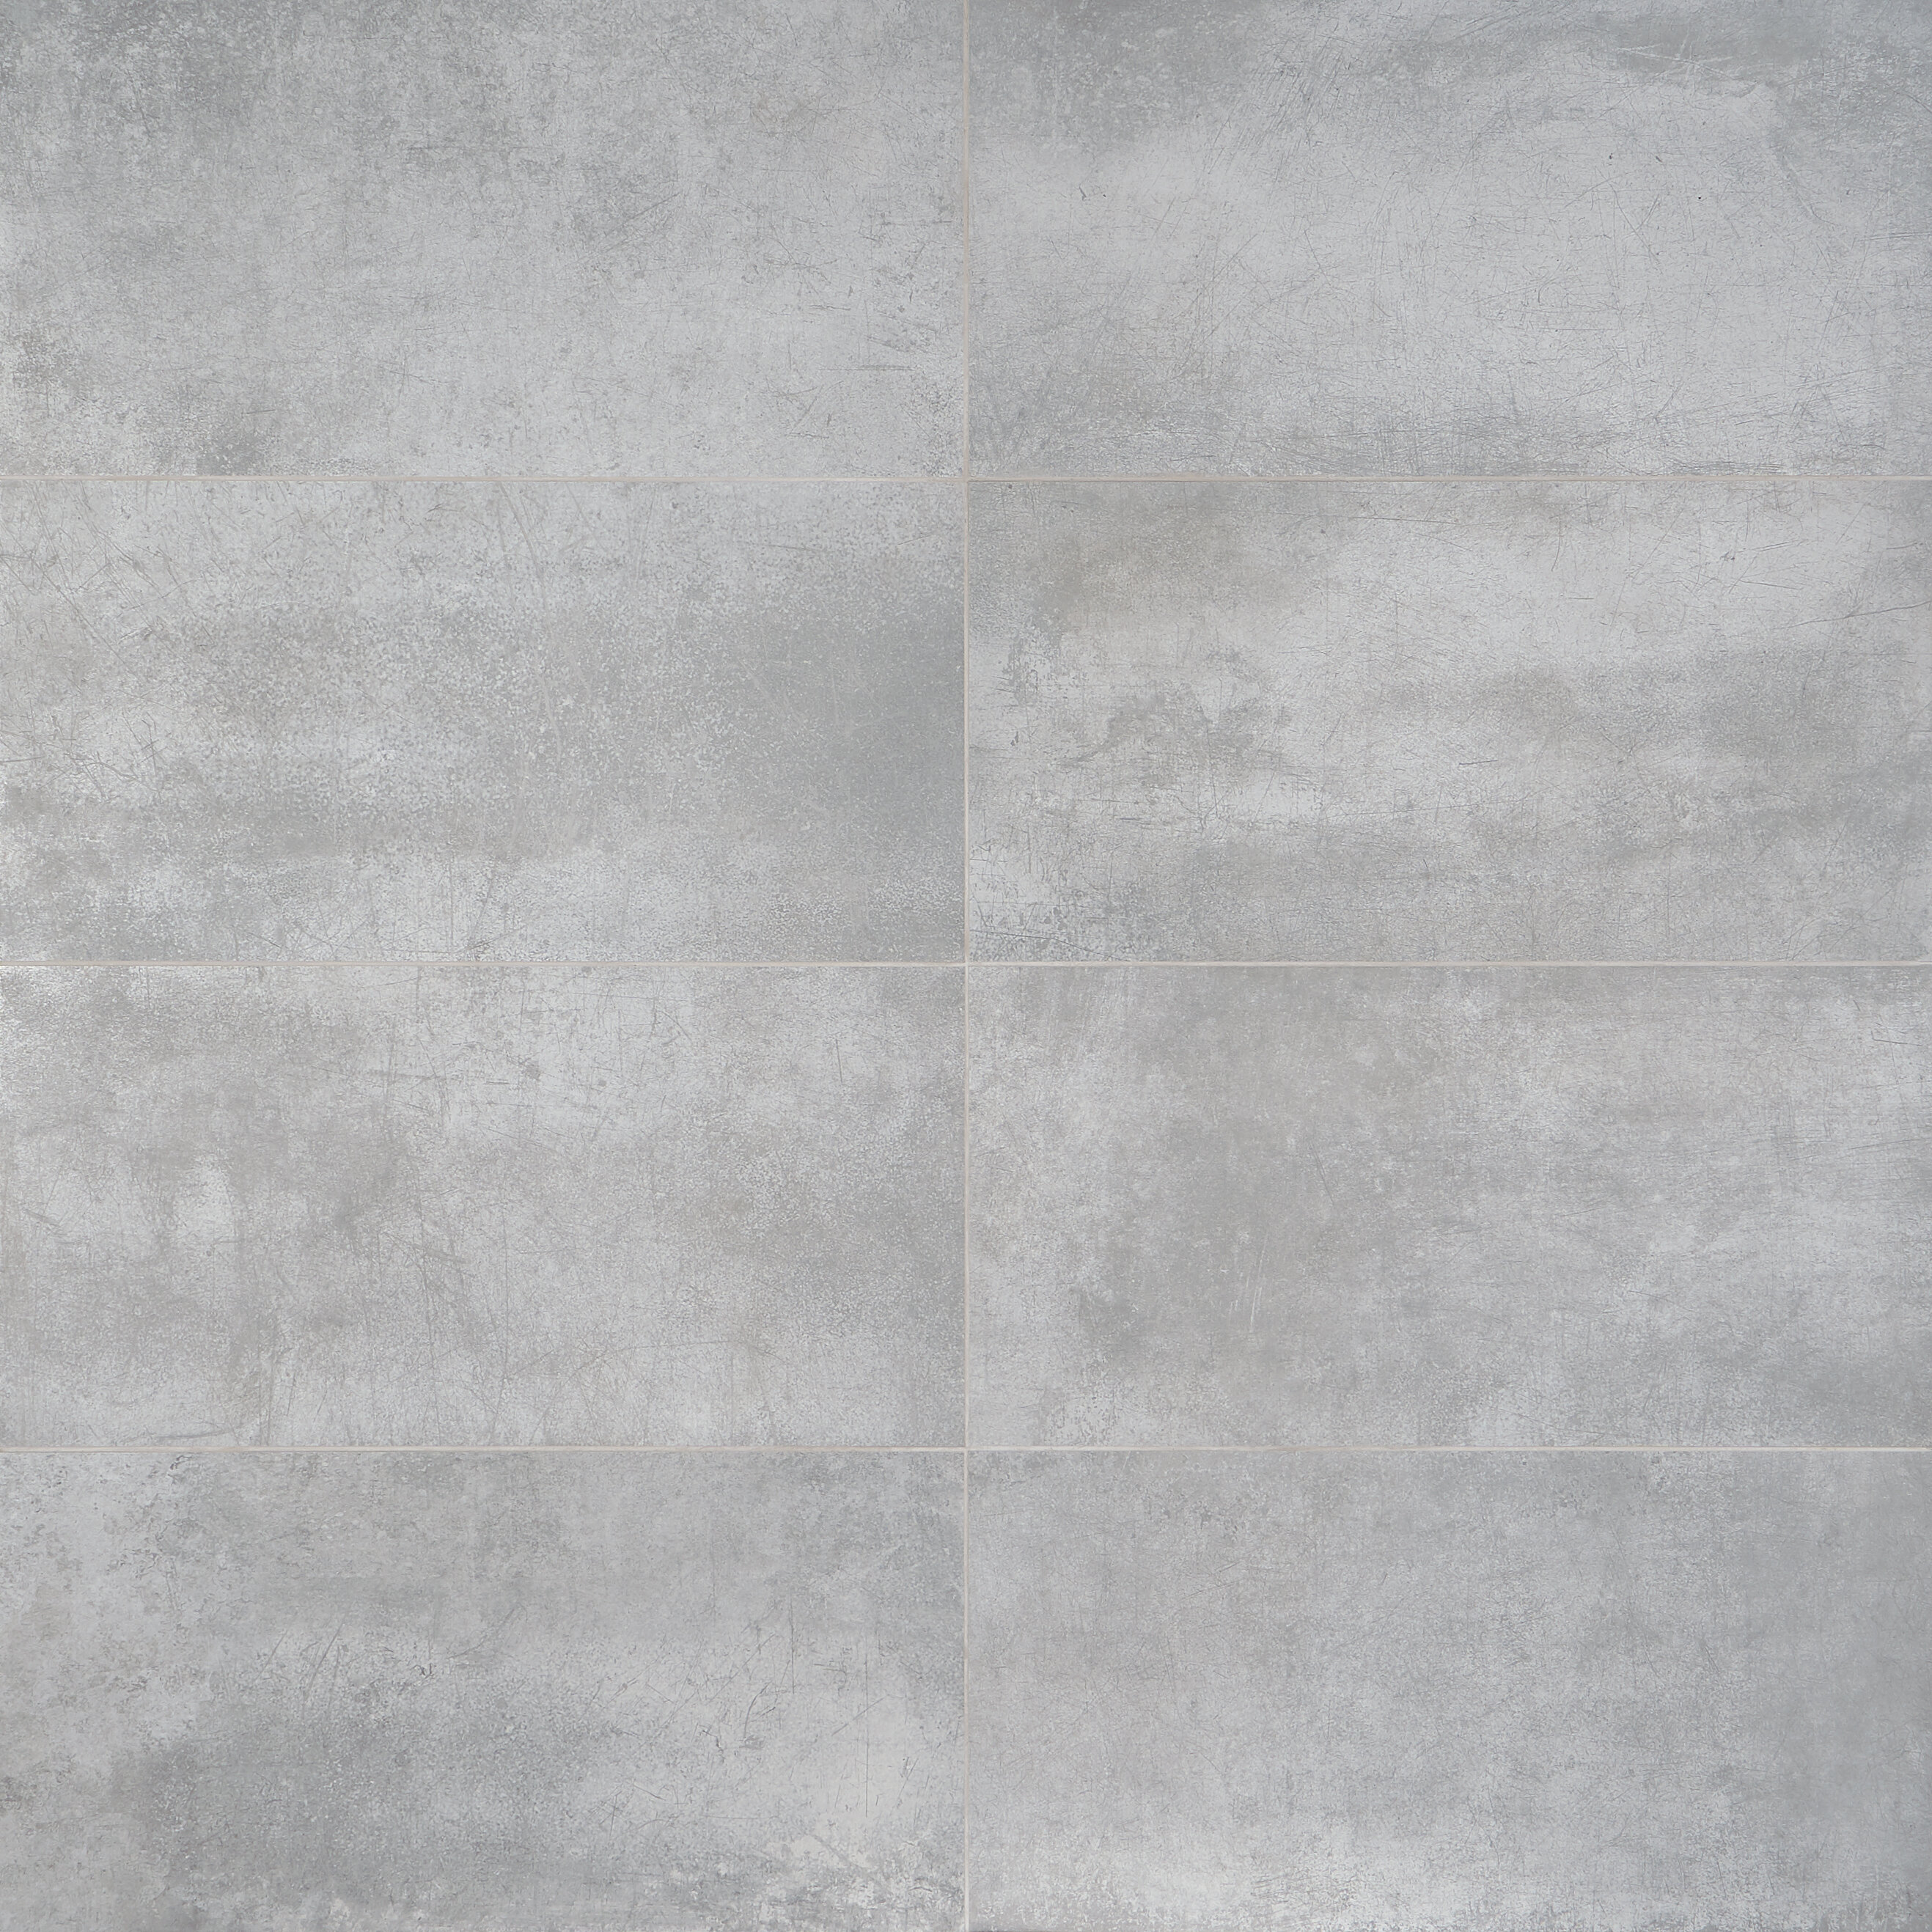 https://assets.wfcdn.com/im/13765771/compr-r85/1542/154294046/forge-12-x-24-porcelain-metal-look-wall-floor-tile.jpg